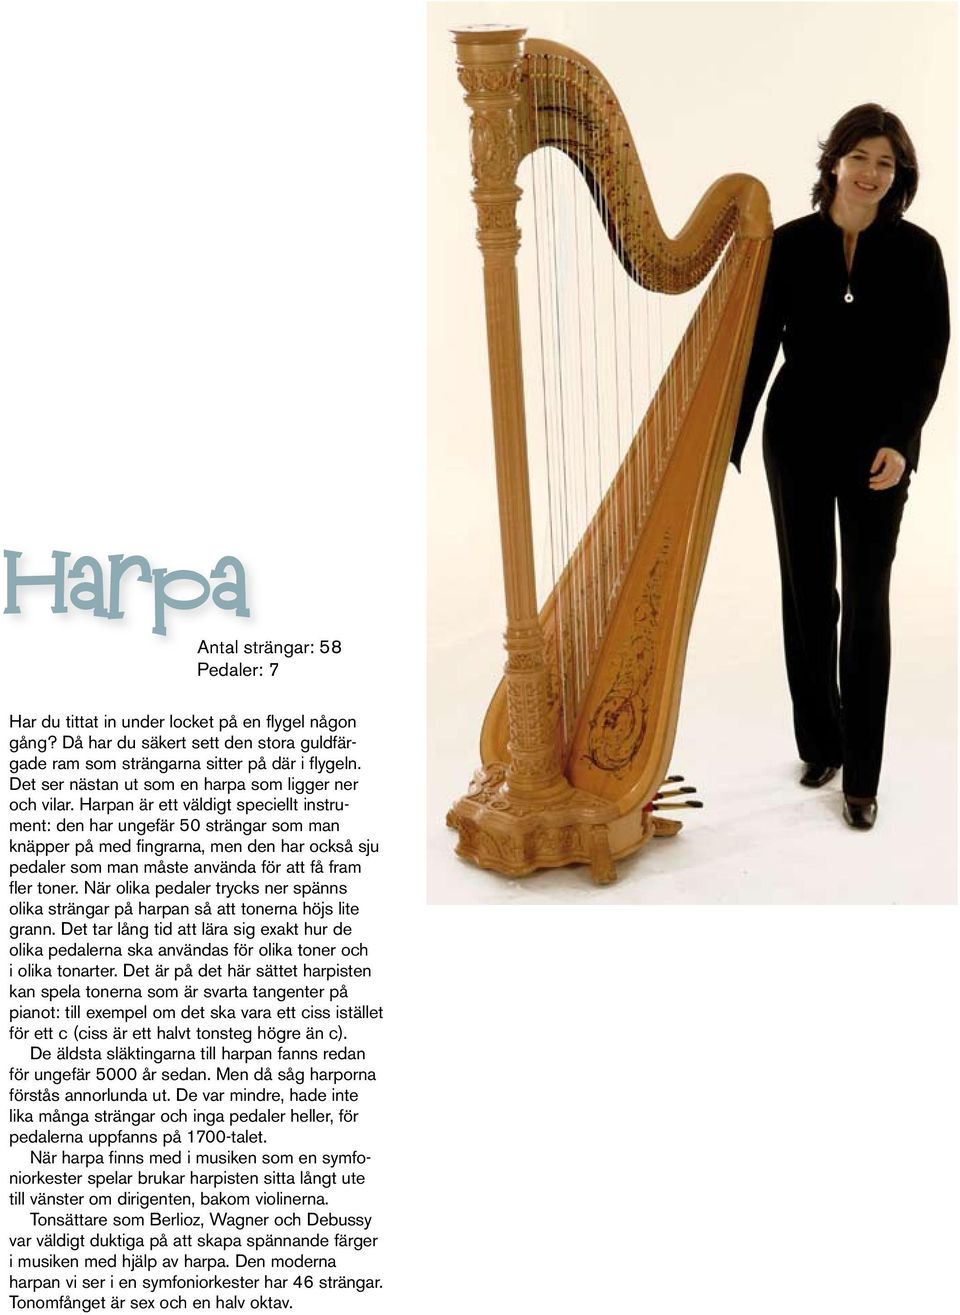 Harpan är ett väldigt speciellt instrument: den har ungefär 50 strängar som man knäpper på med fingrarna, men den har också sju pedaler som man måste använda för att få fram fler toner.